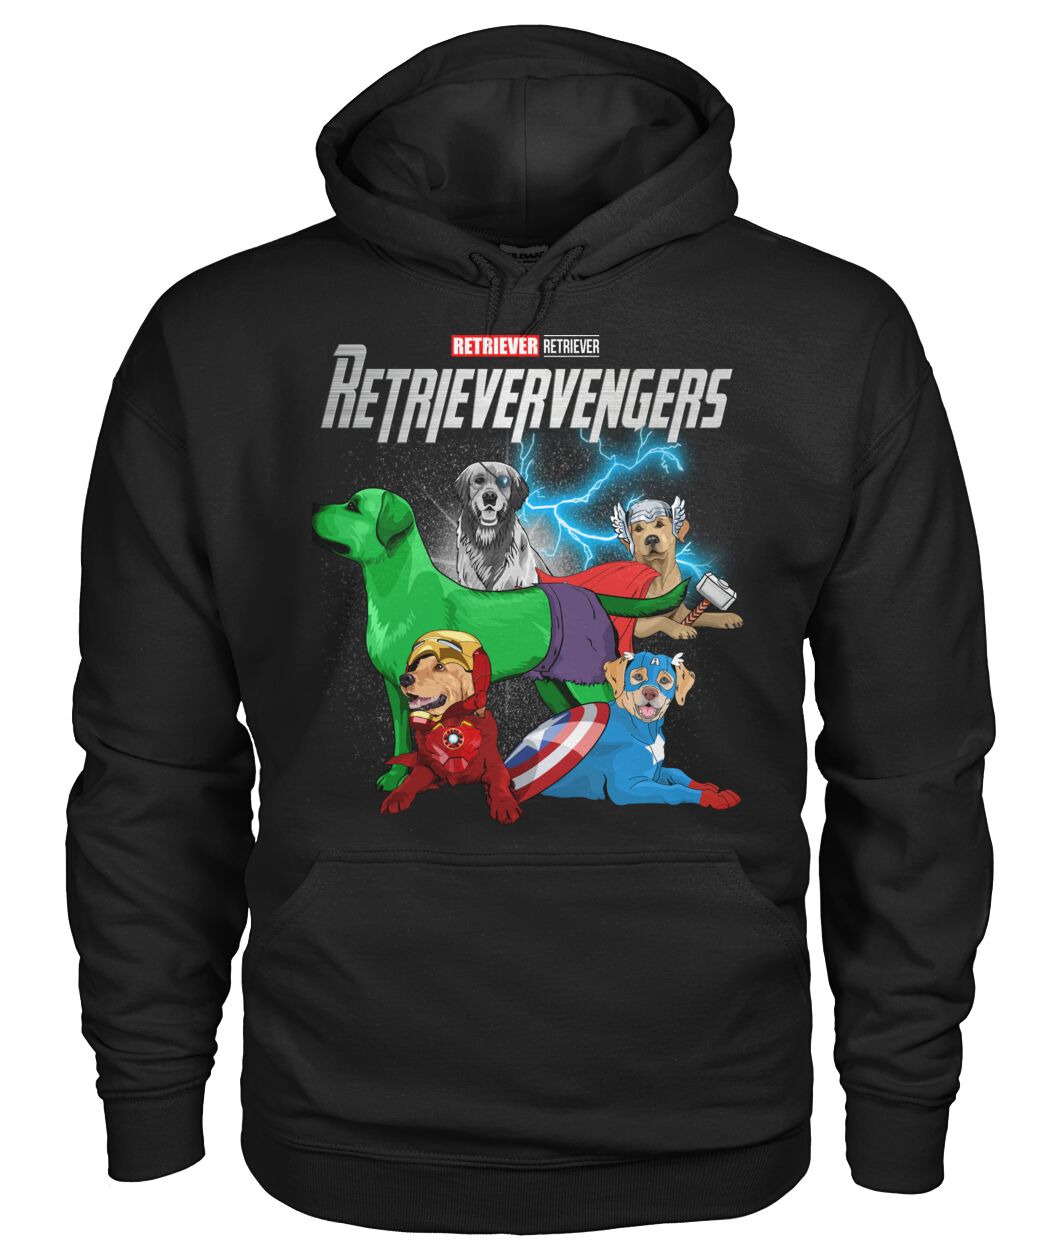 Retrievervengers 3D Hoodie, Shirt 22